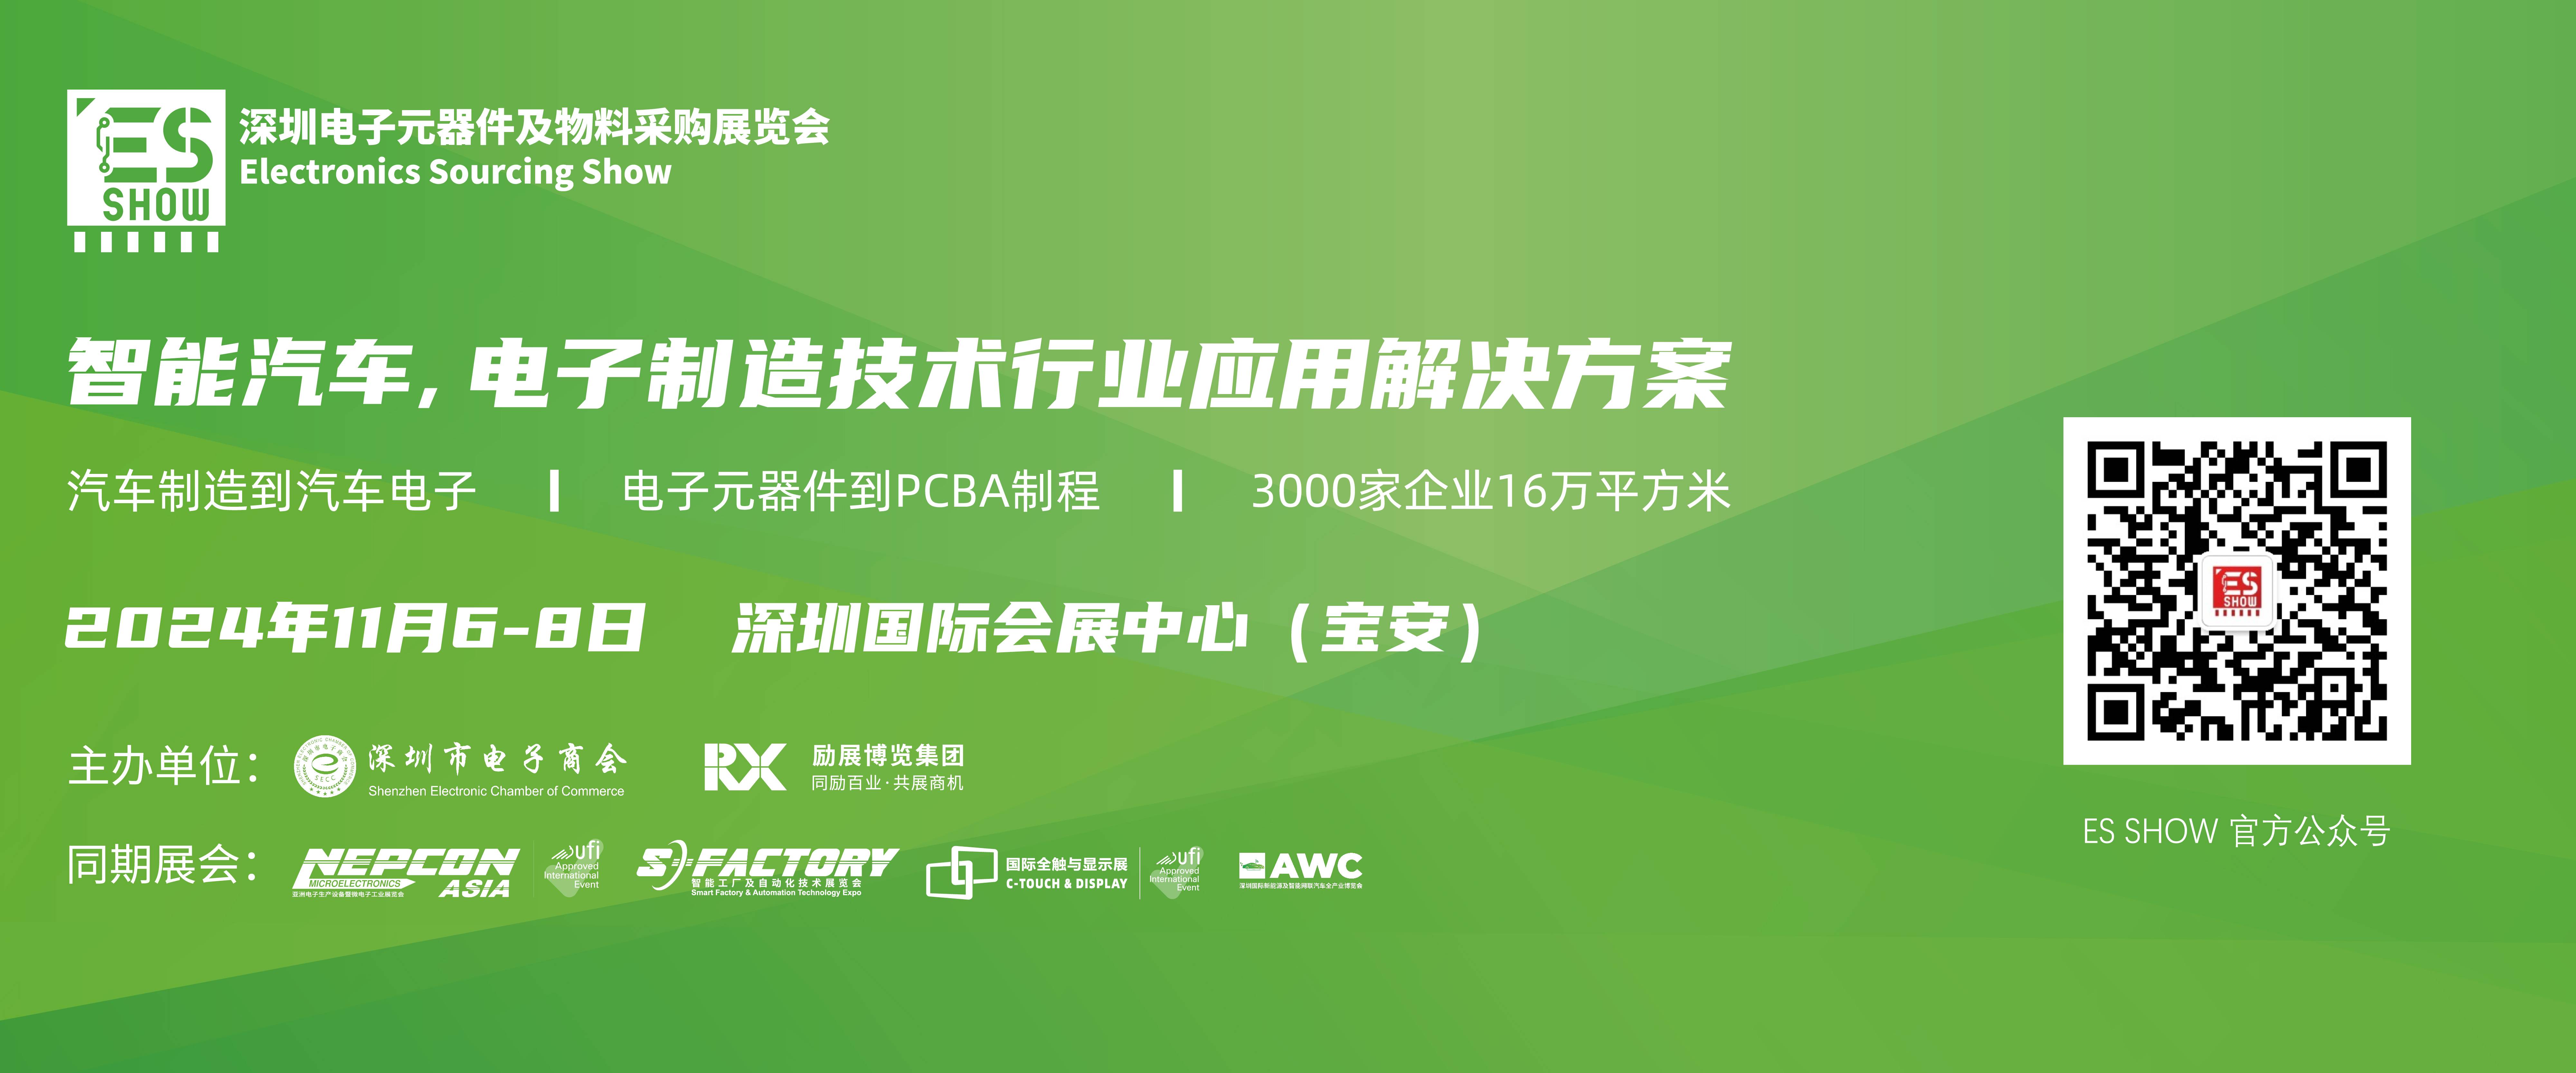 英伟达 AI GPU 深圳电子展 华南电子展 中国电子展